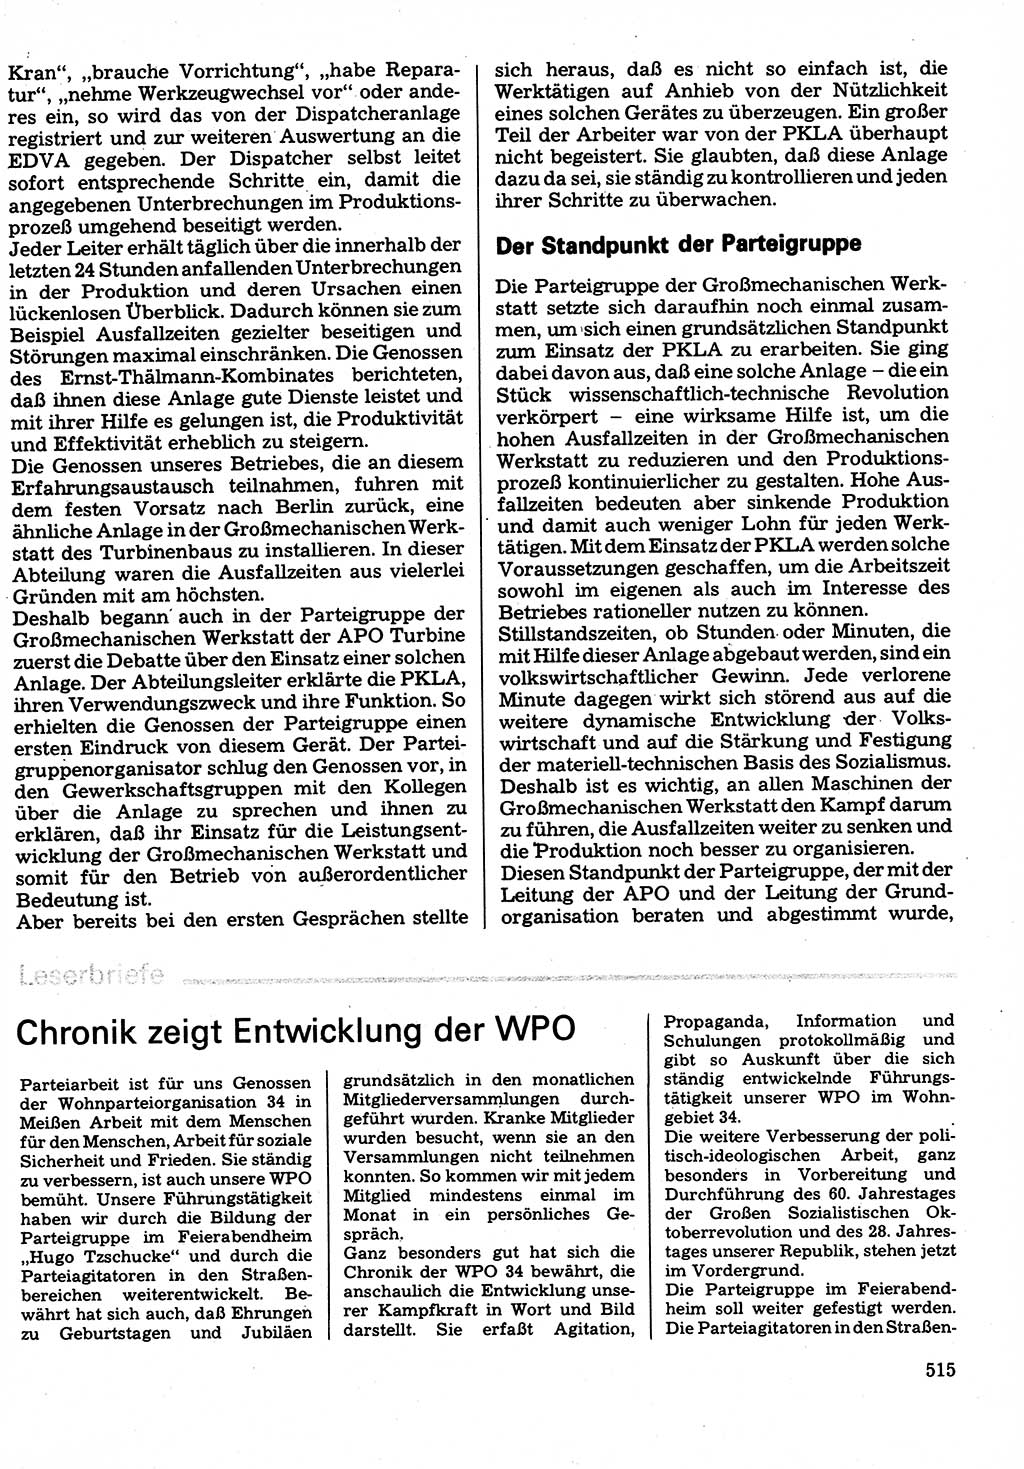 Neuer Weg (NW), Organ des Zentralkomitees (ZK) der SED (Sozialistische Einheitspartei Deutschlands) für Fragen des Parteilebens, 32. Jahrgang [Deutsche Demokratische Republik (DDR)] 1977, Seite 515 (NW ZK SED DDR 1977, S. 515)